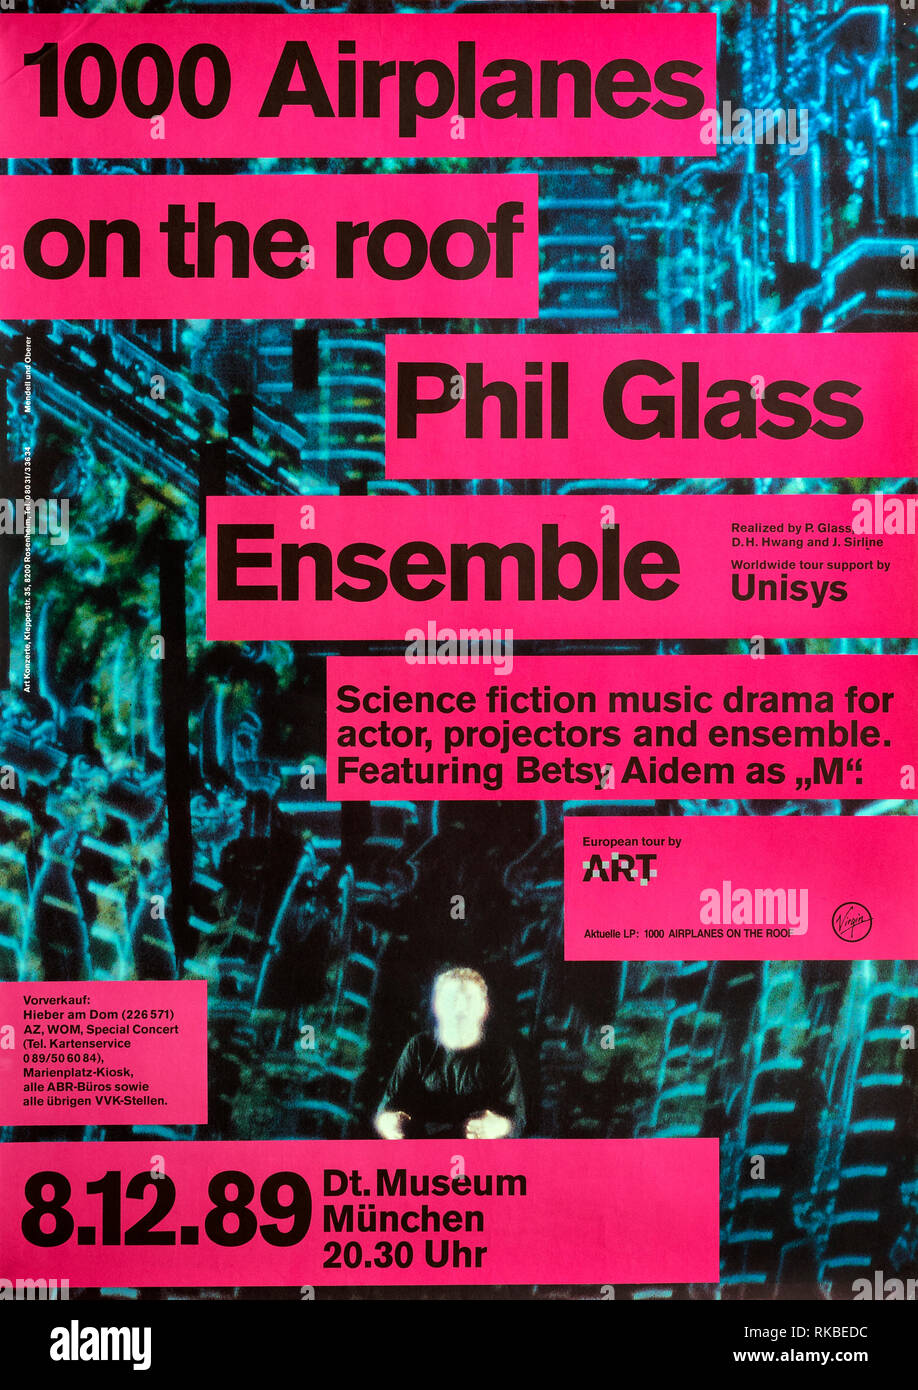 1000 Les avions sur le toit, Phil Glass Ensemble, Munich 1989, concert de musique ancienne Banque D'Images